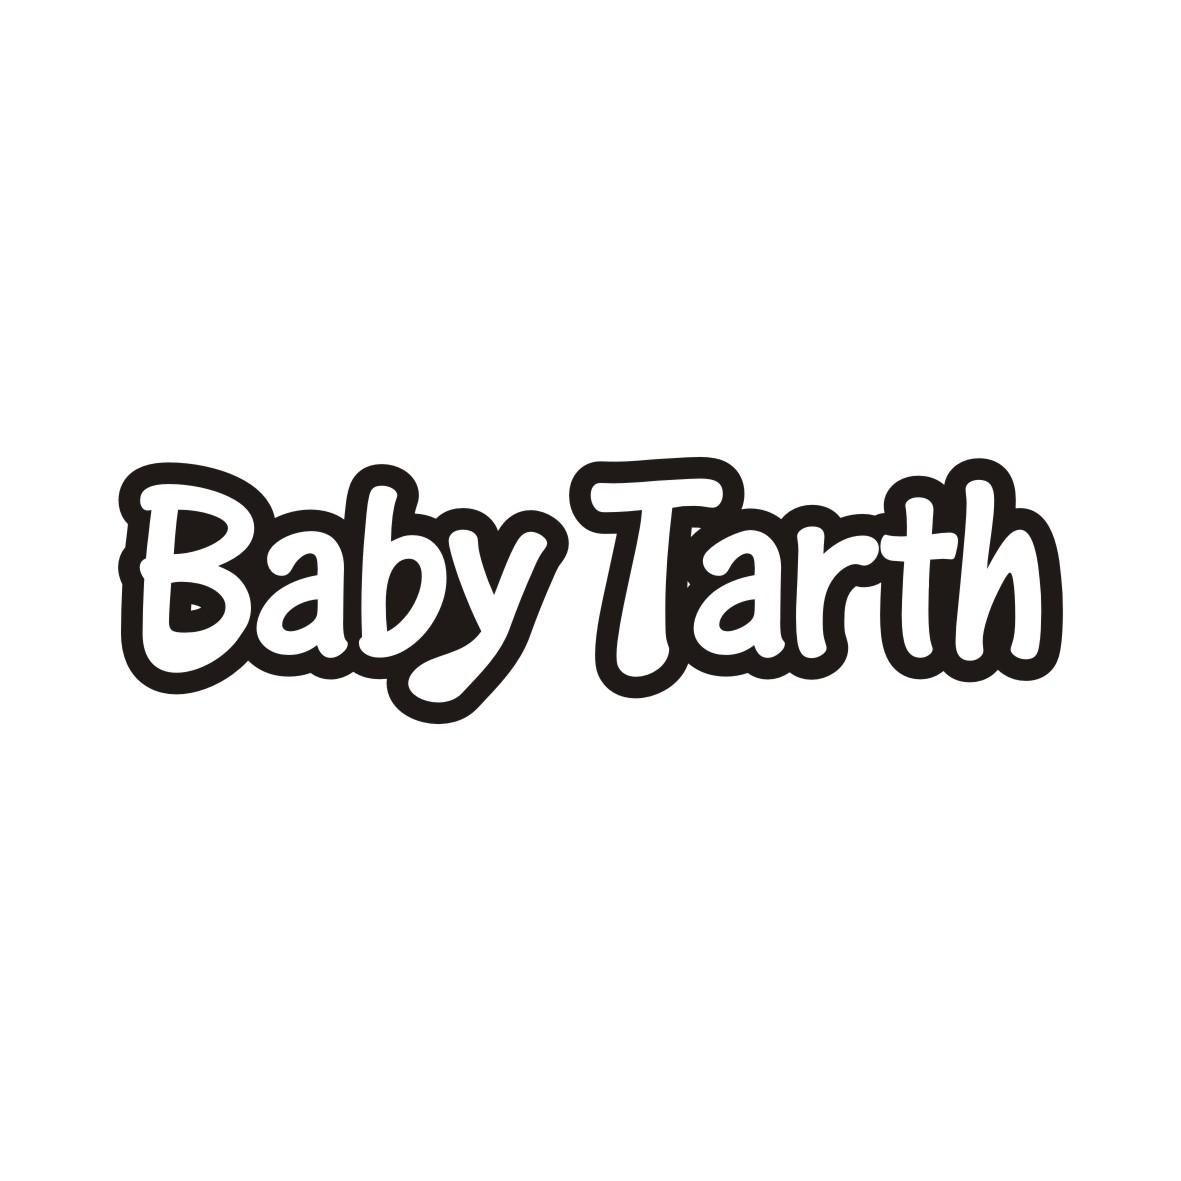 28类-健身玩具BABY TARTH商标转让